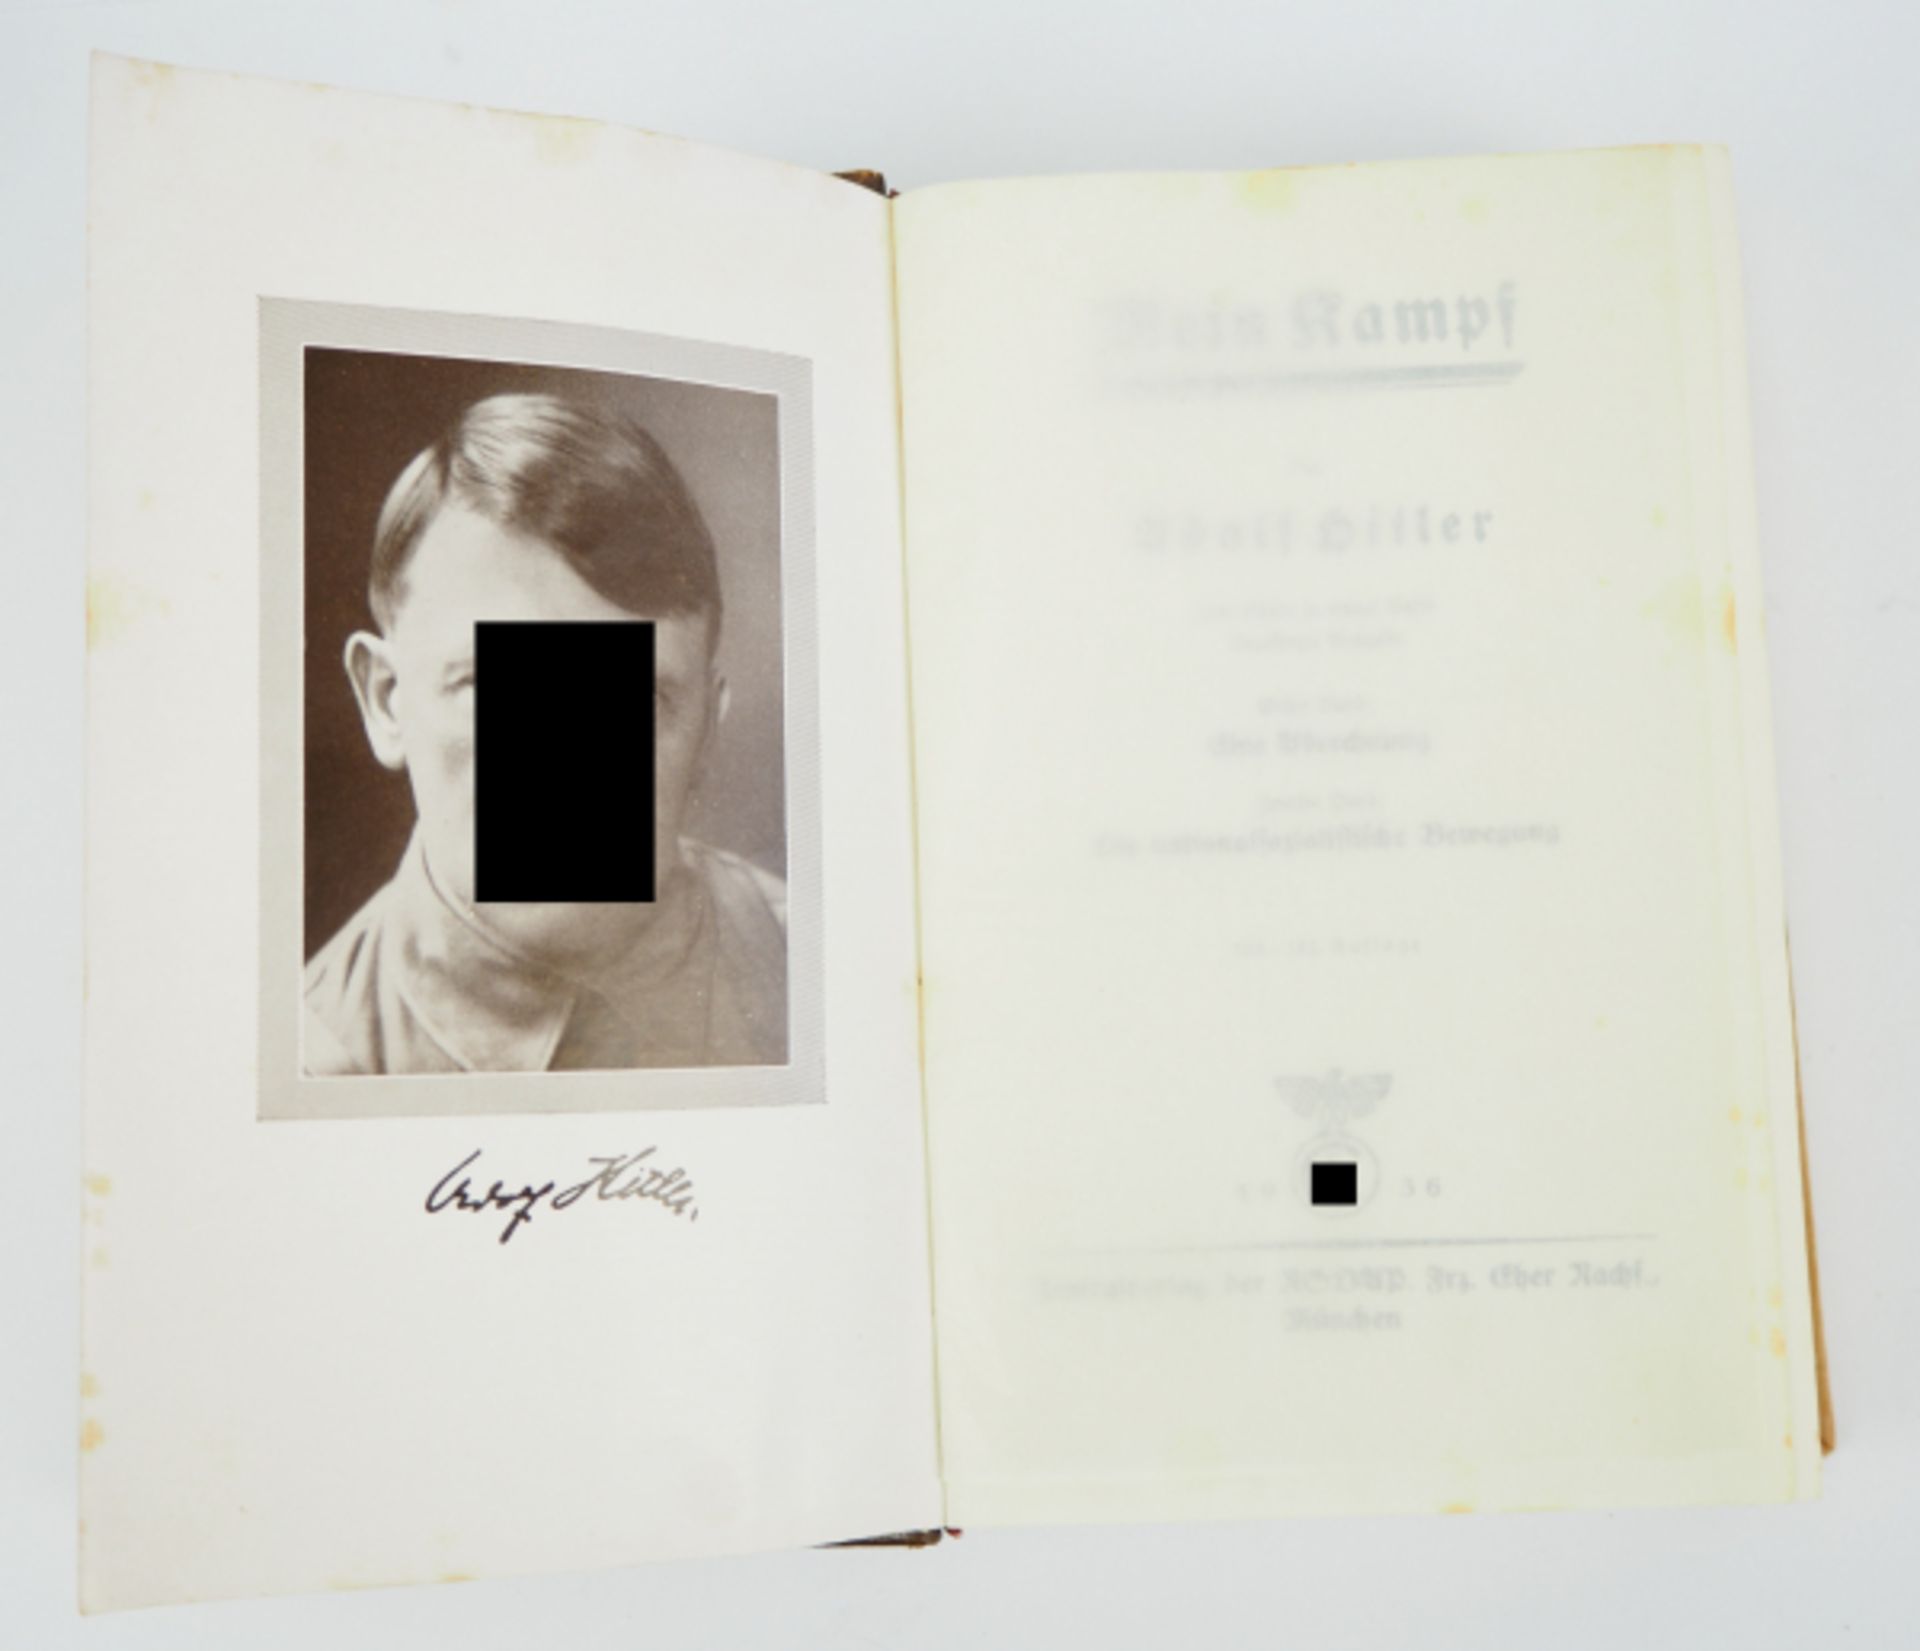 Hitler, Adolf: Mein Kampf.Zentralverlag der NSDAP Frz. Eher Nachf., München, 1936, Bindung etwas - Image 3 of 3